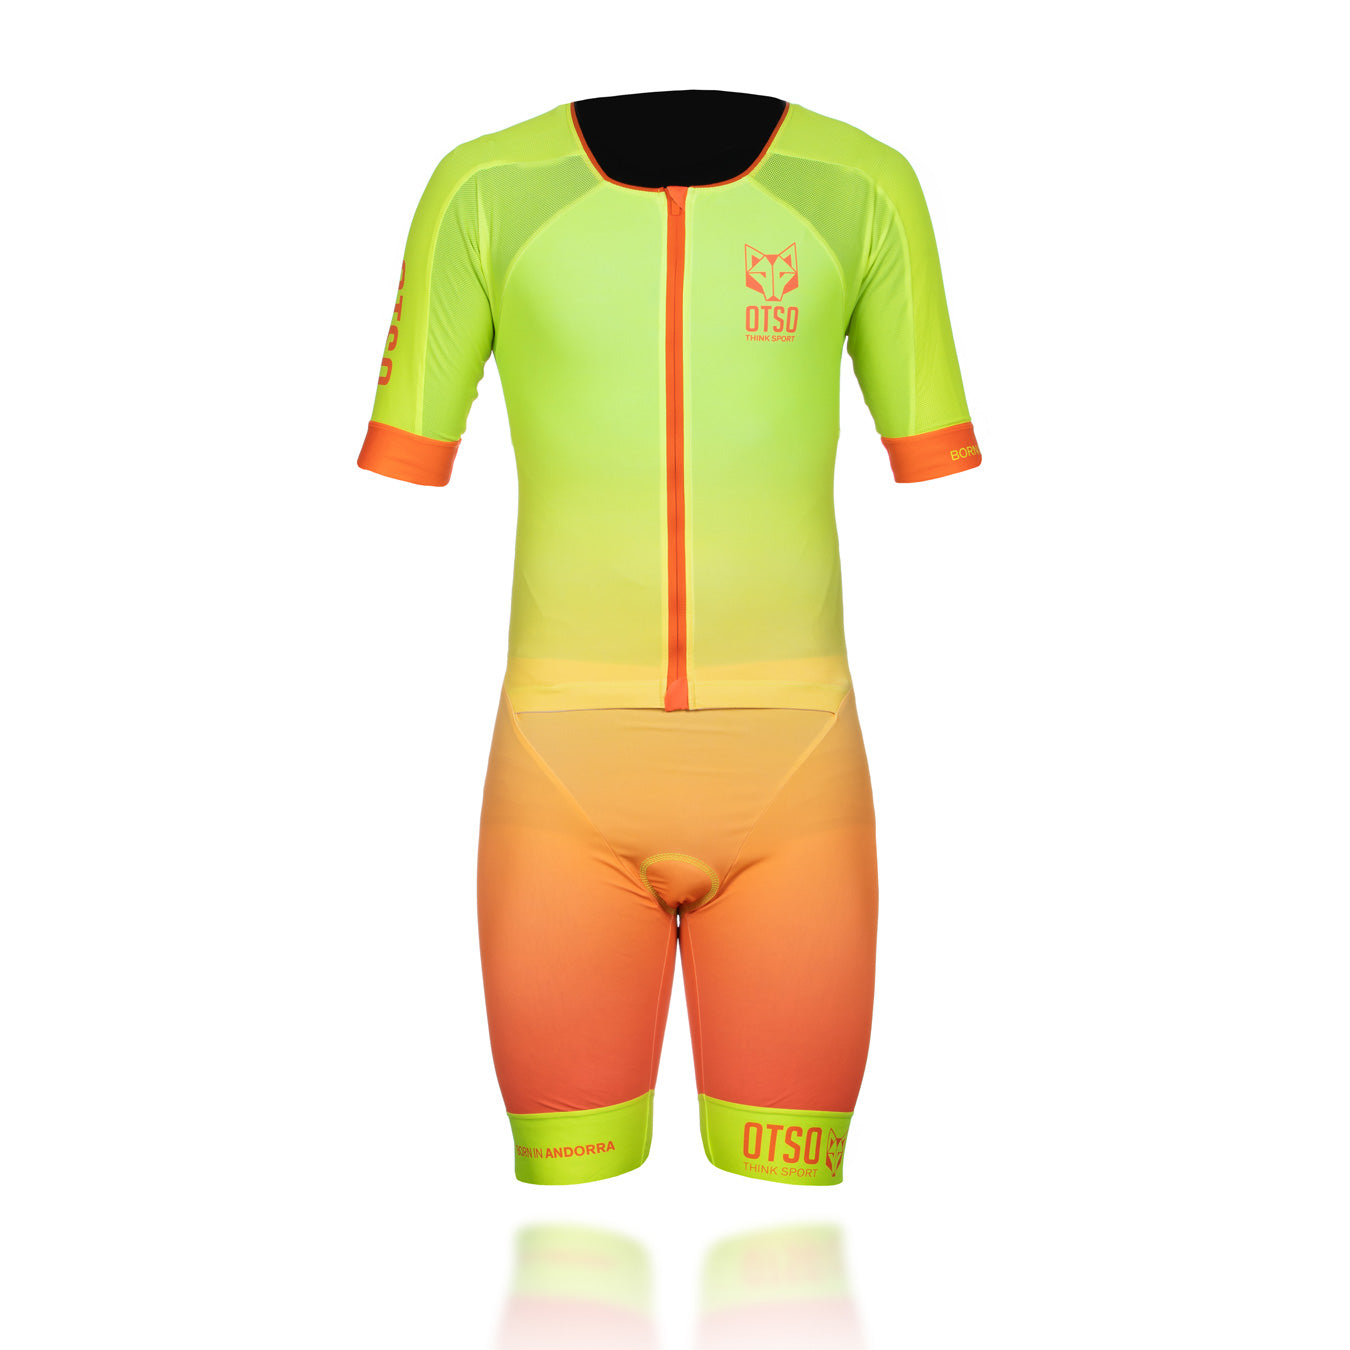 Men's triathlon suits